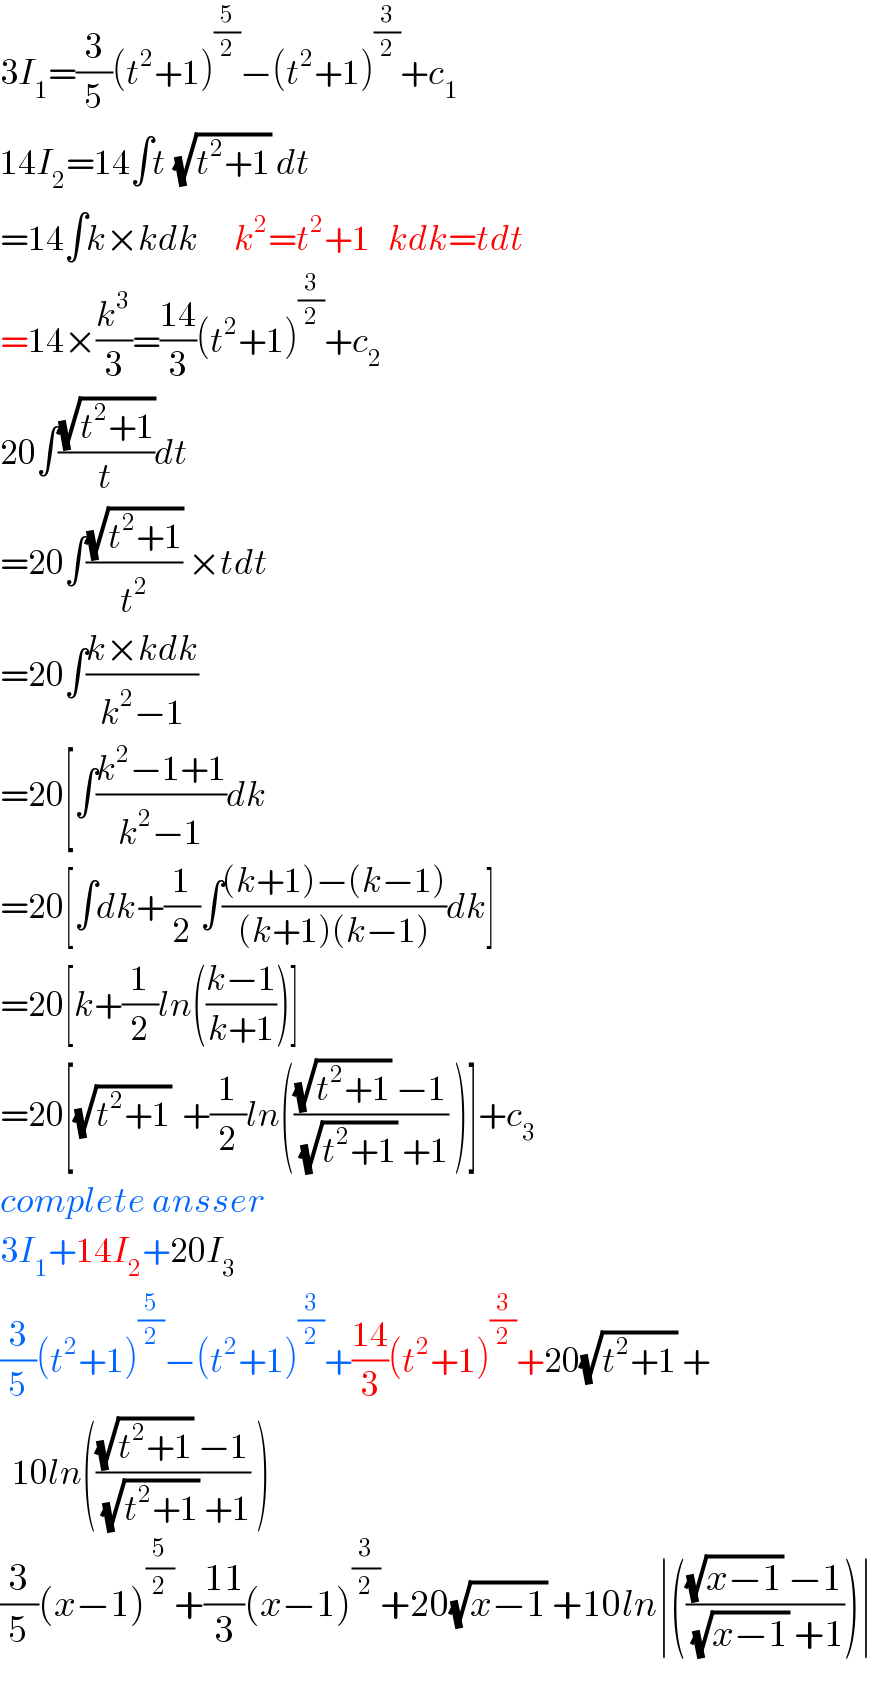 3I_1 =(3/5)(t^2 +1)^(5/2) −(t^2 +1)^(3/2) +c_1   14I_2 =14∫t^ (√(t^2 +1)) dt  =14∫k×kdk      k^2 =t^2 +1   kdk=tdt  =14×(k^3 /3)=((14)/3)(t^2 +1)^(3/2) +c_2   20∫((√(t^2 +1))/t)dt  =20∫((√(t^2 +1))/t^2 ) ×tdt  =20∫((k×kdk)/(k^2 −1))  =20[∫((k^2 −1+1)/(k^2 −1))dk  =20[∫dk+(1/2)∫(((k+1)−(k−1))/((k+1)(k−1)))dk]  =20[k+(1/2)ln(((k−1)/(k+1)))]  =20[(√(t^2 +1))  +(1/2)ln((((√(t^2 +1)) −1)/((√(t^2 +1)) +1)) )]+c_3   complete ansser  3I_1 +14I_2 +20I_3   (3/5)(t^2 +1)^(5/2) −(t^2 +1)^(3/2) +((14)/3)(t^2 +1)^(3/2) +20(√(t^2 +1)) +    10ln((((√(t^2 +1)) −1)/((√(t^2 +1)) +1)) )  (3/5)(x−1)^(5/2) +((11)/3)(x−1)^(3/2) +20(√(x−1)) +10ln∣((((√(x−1)) −1)/((√(x−1)) +1)))∣  